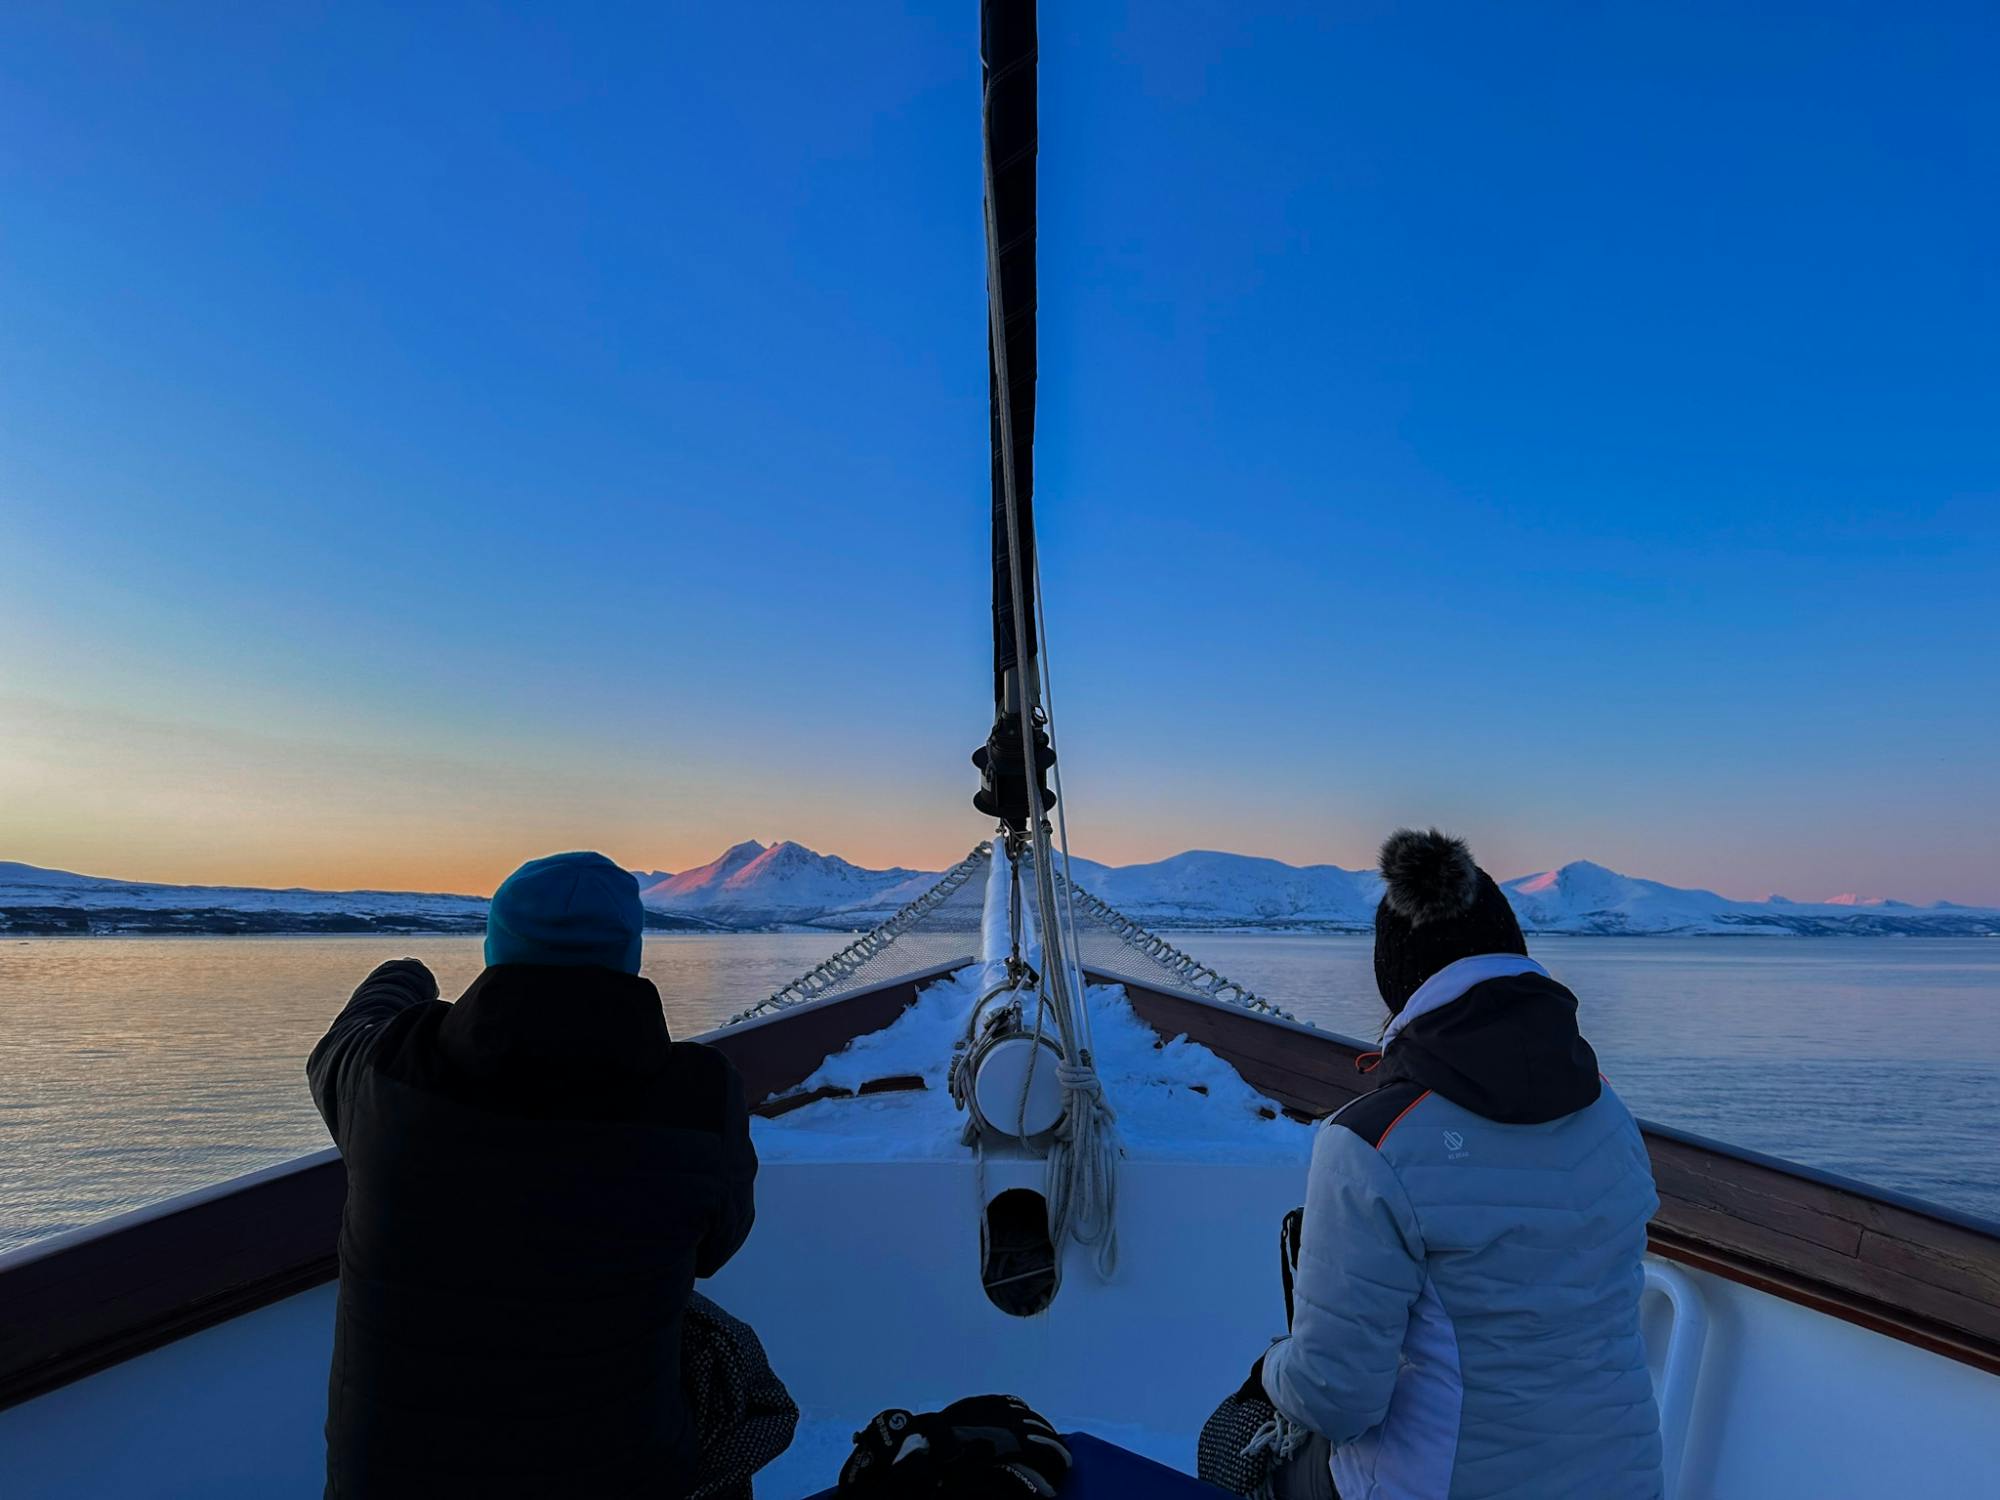 Luxuriöse Polarfjordkreuzfahrt in Tromsø